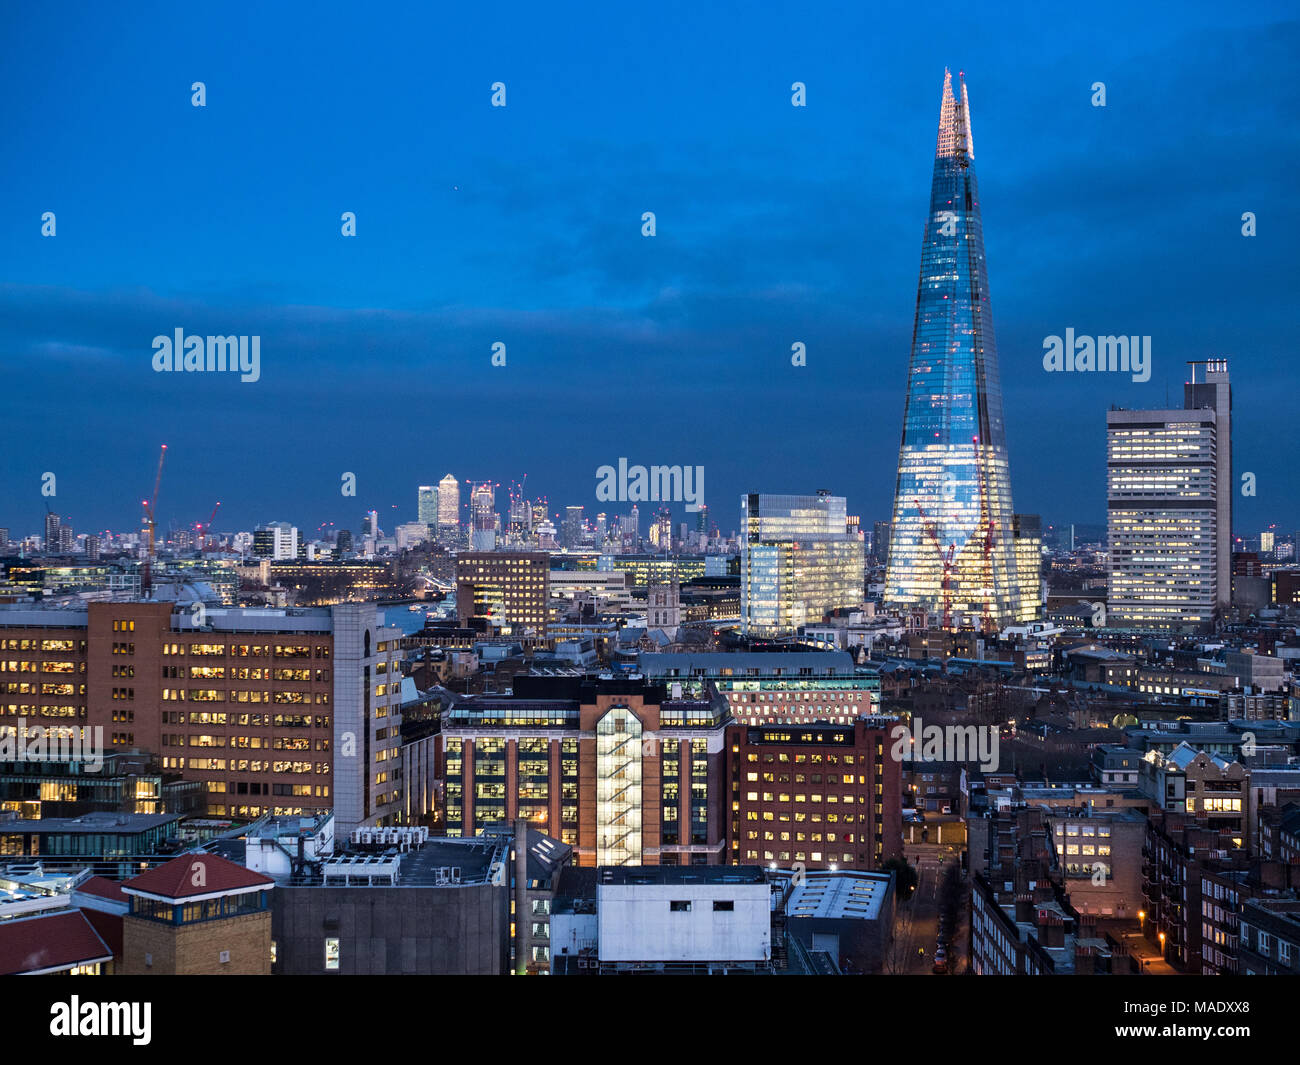 Skyline von London Londoner Stadtbild in South East London mit den Shard Turm bis zur Canary Wharf im Osten Londons Stockfoto